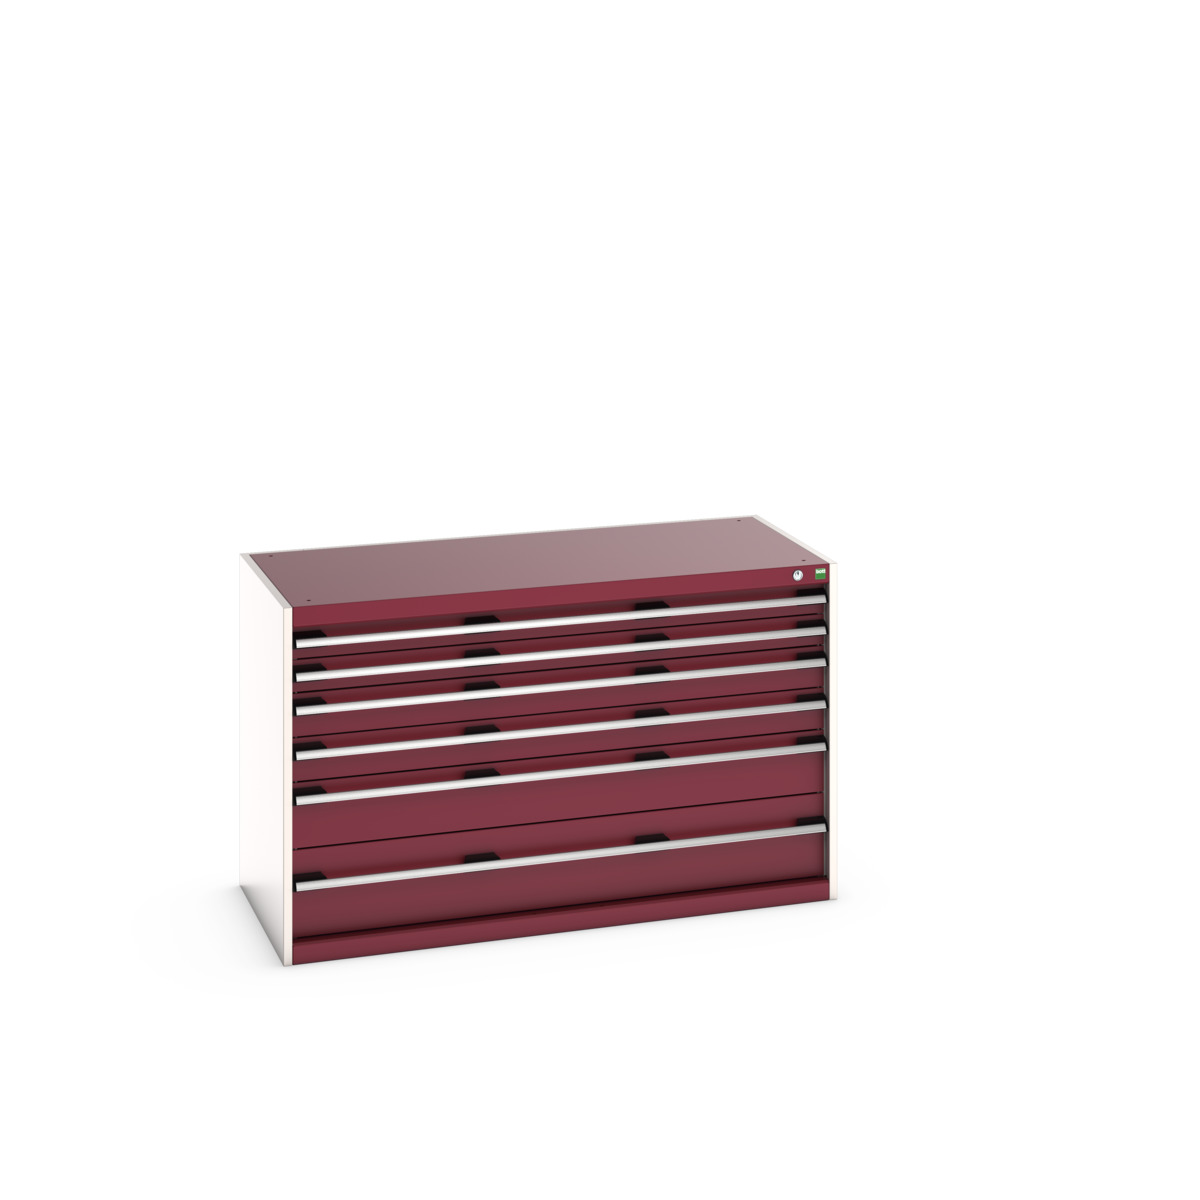 40022109.24V - cubio drawer cabinet